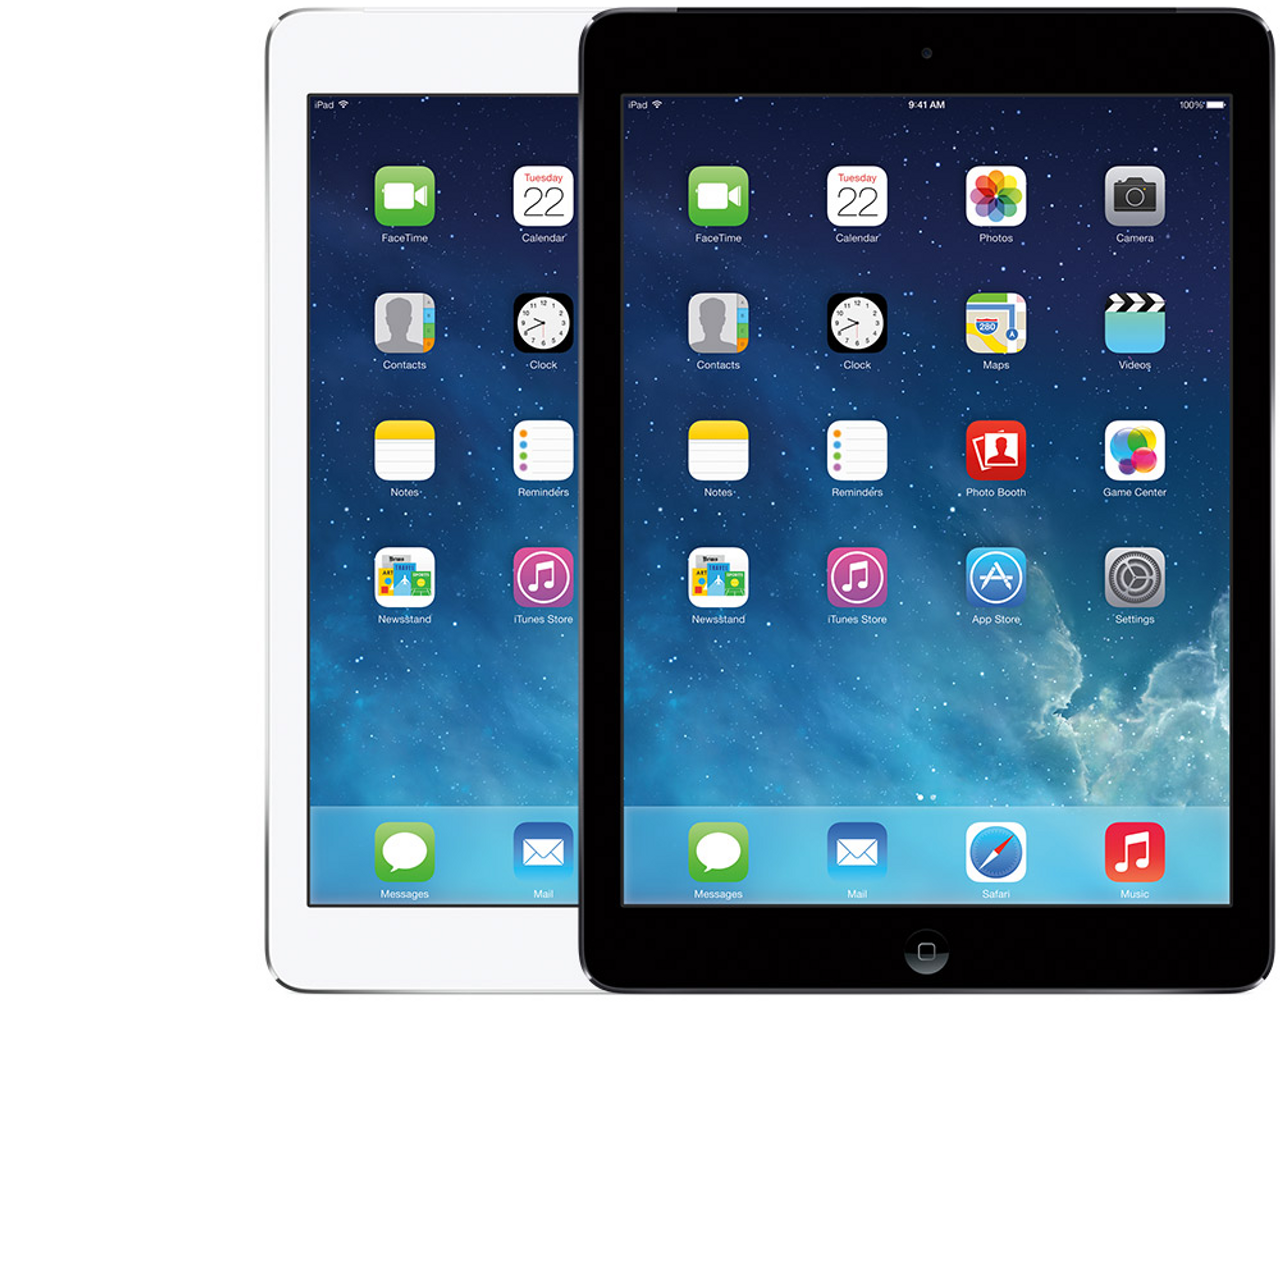 Apple iPad Air 16GB Black Space Gray Wi-Fi (2013) MD785LL/A